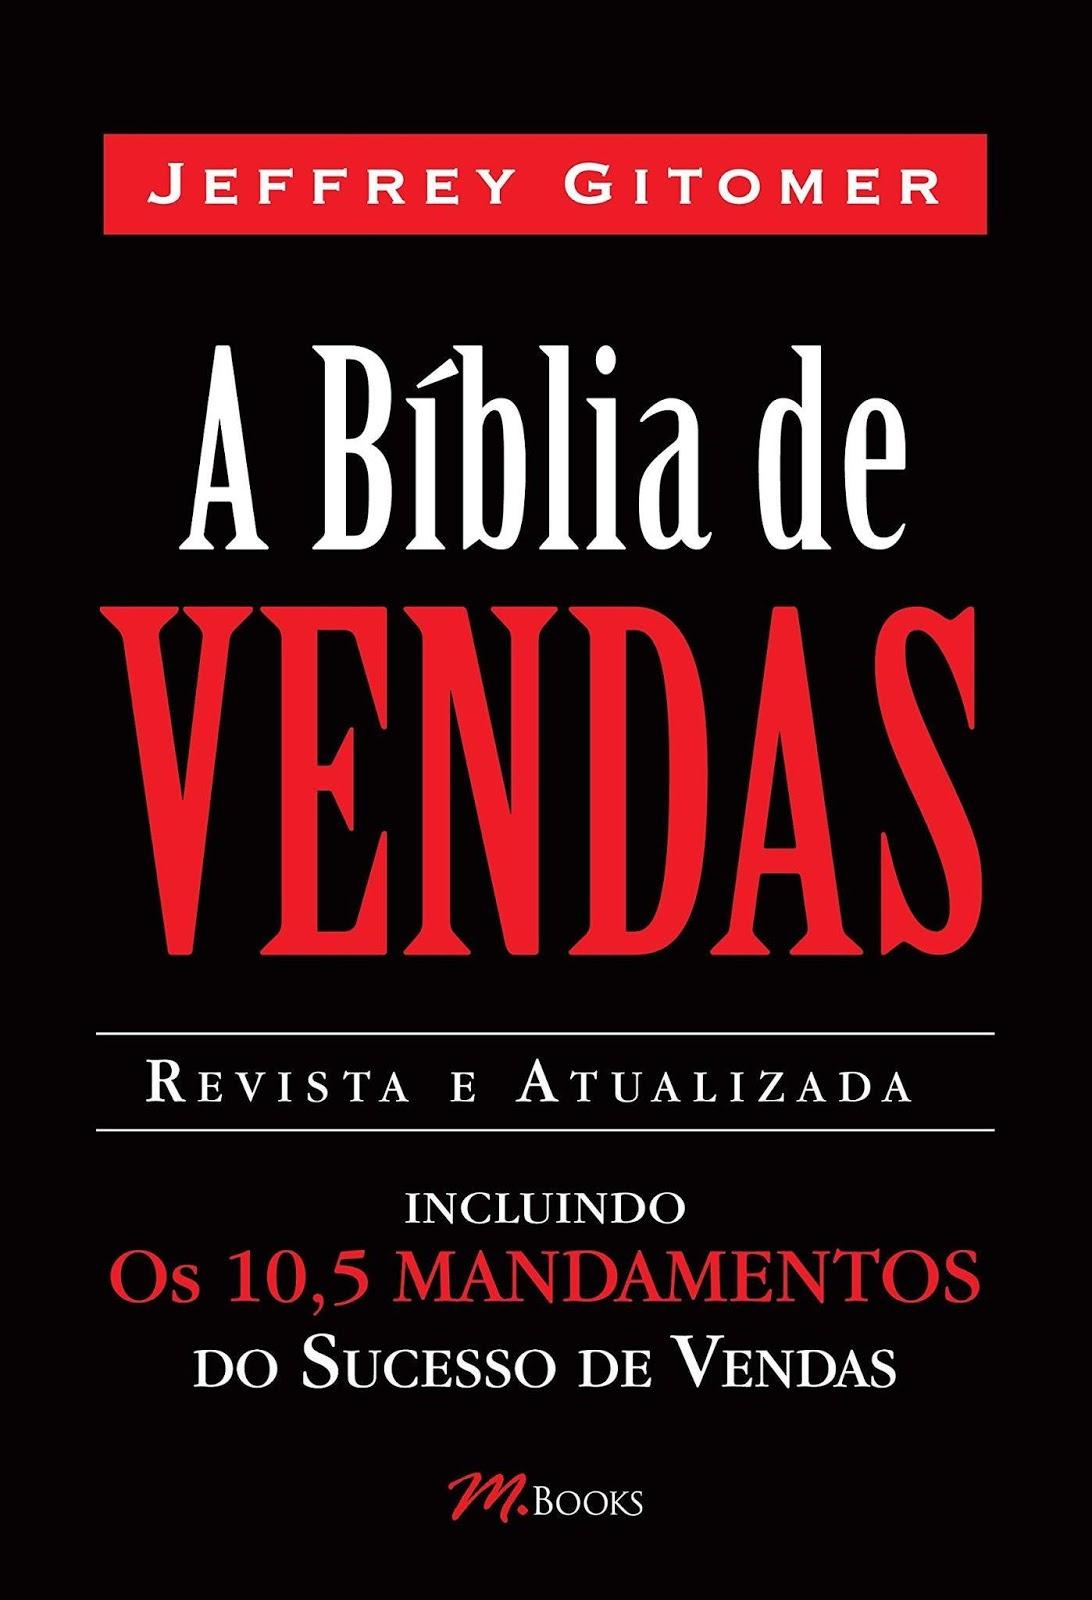 Capa do livro "A Bíblia de Vendas"